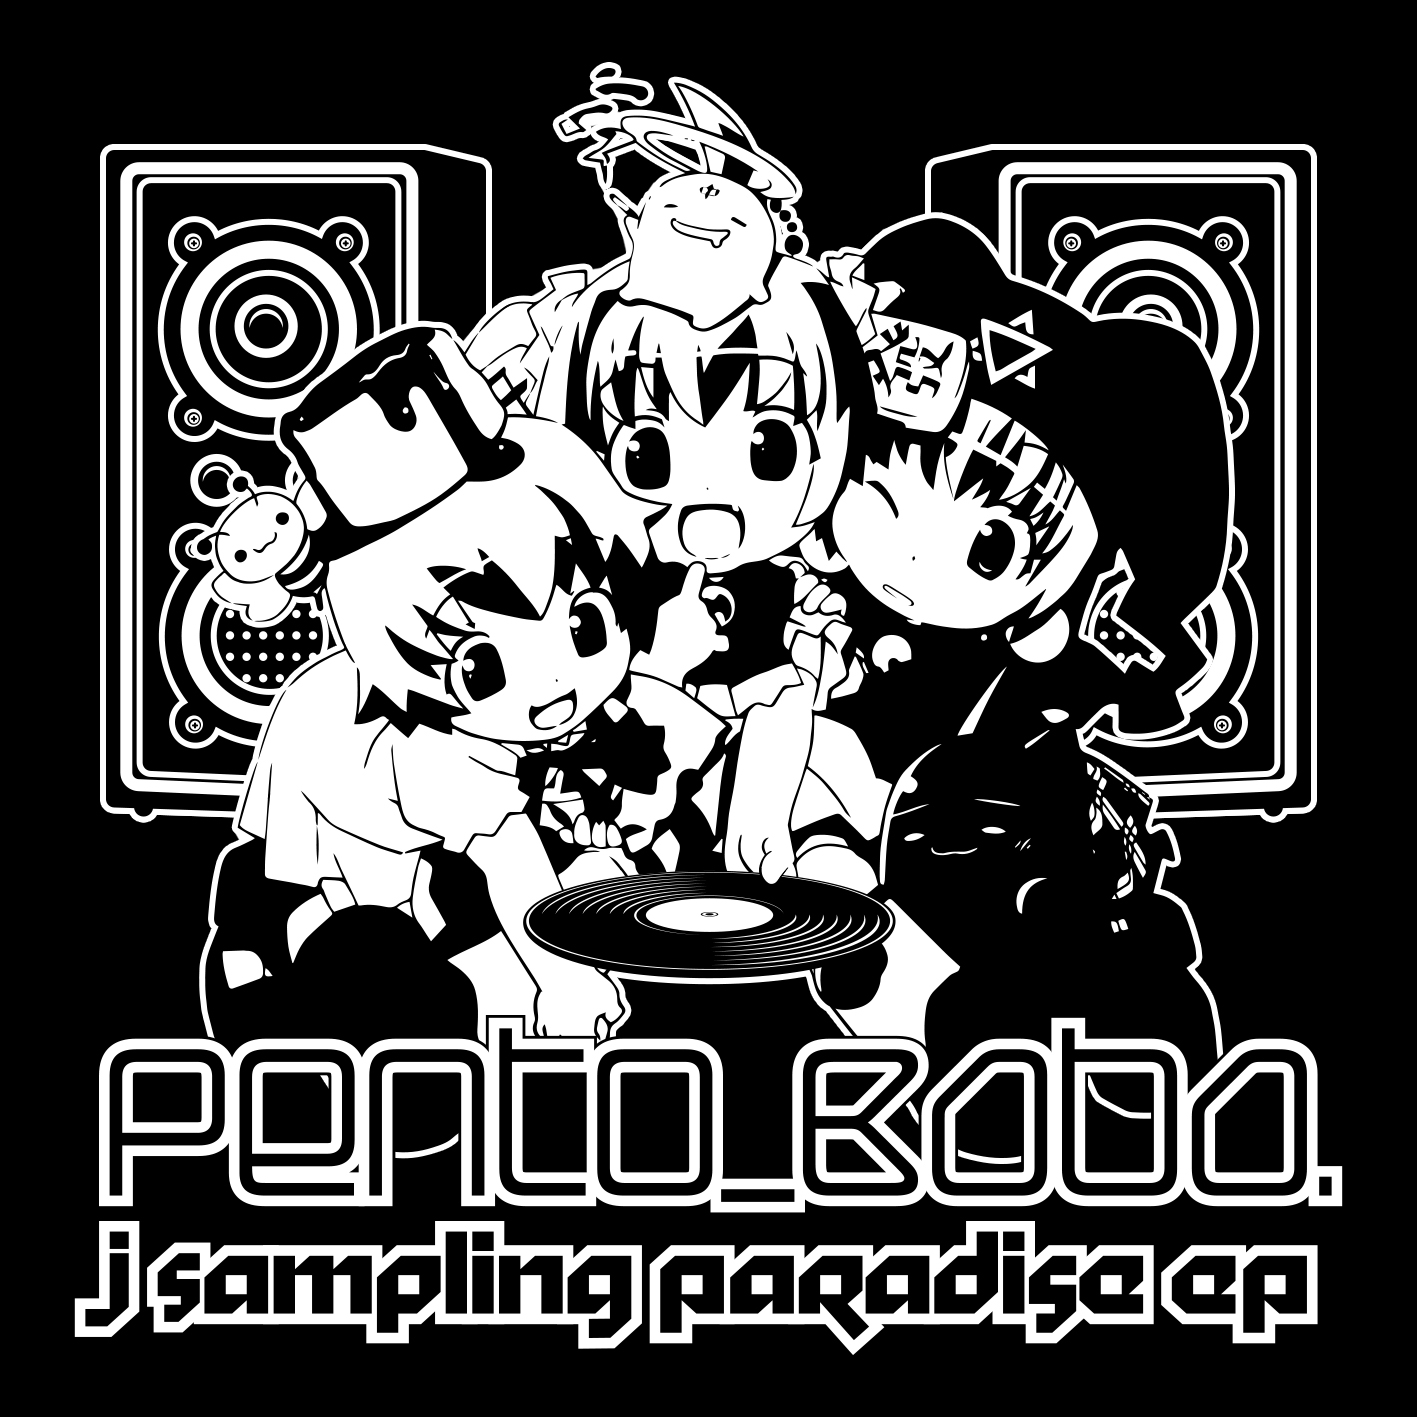 Pento_Baba. – J Sampling Paradise EP